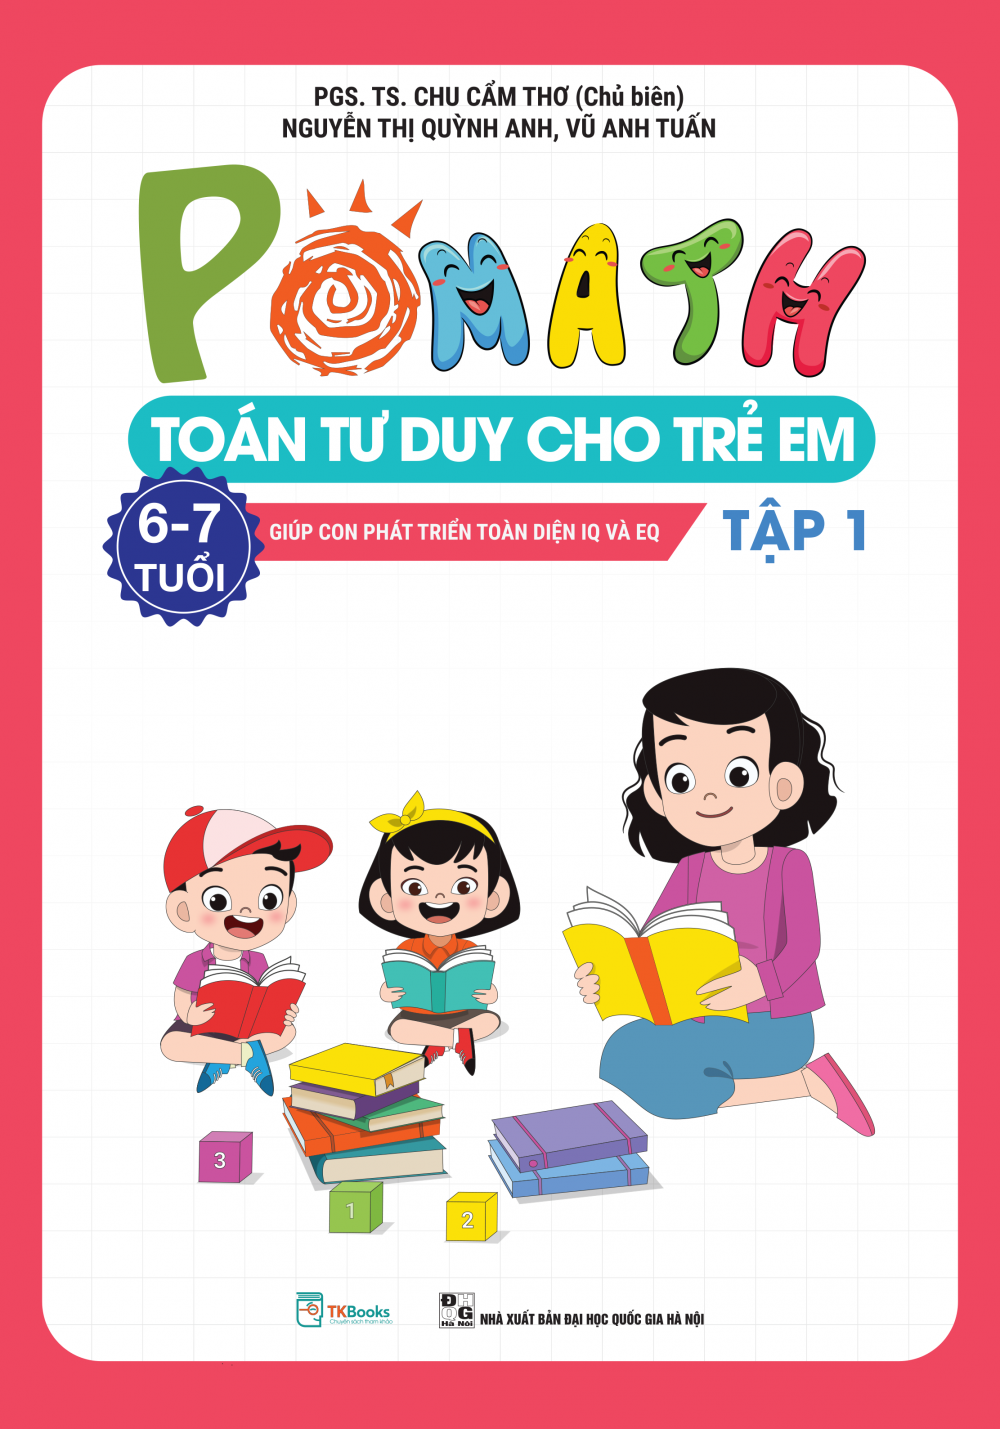 Pomath – Toán tư duy cho trẻ em 6 – 7 tuổi - Tập 1